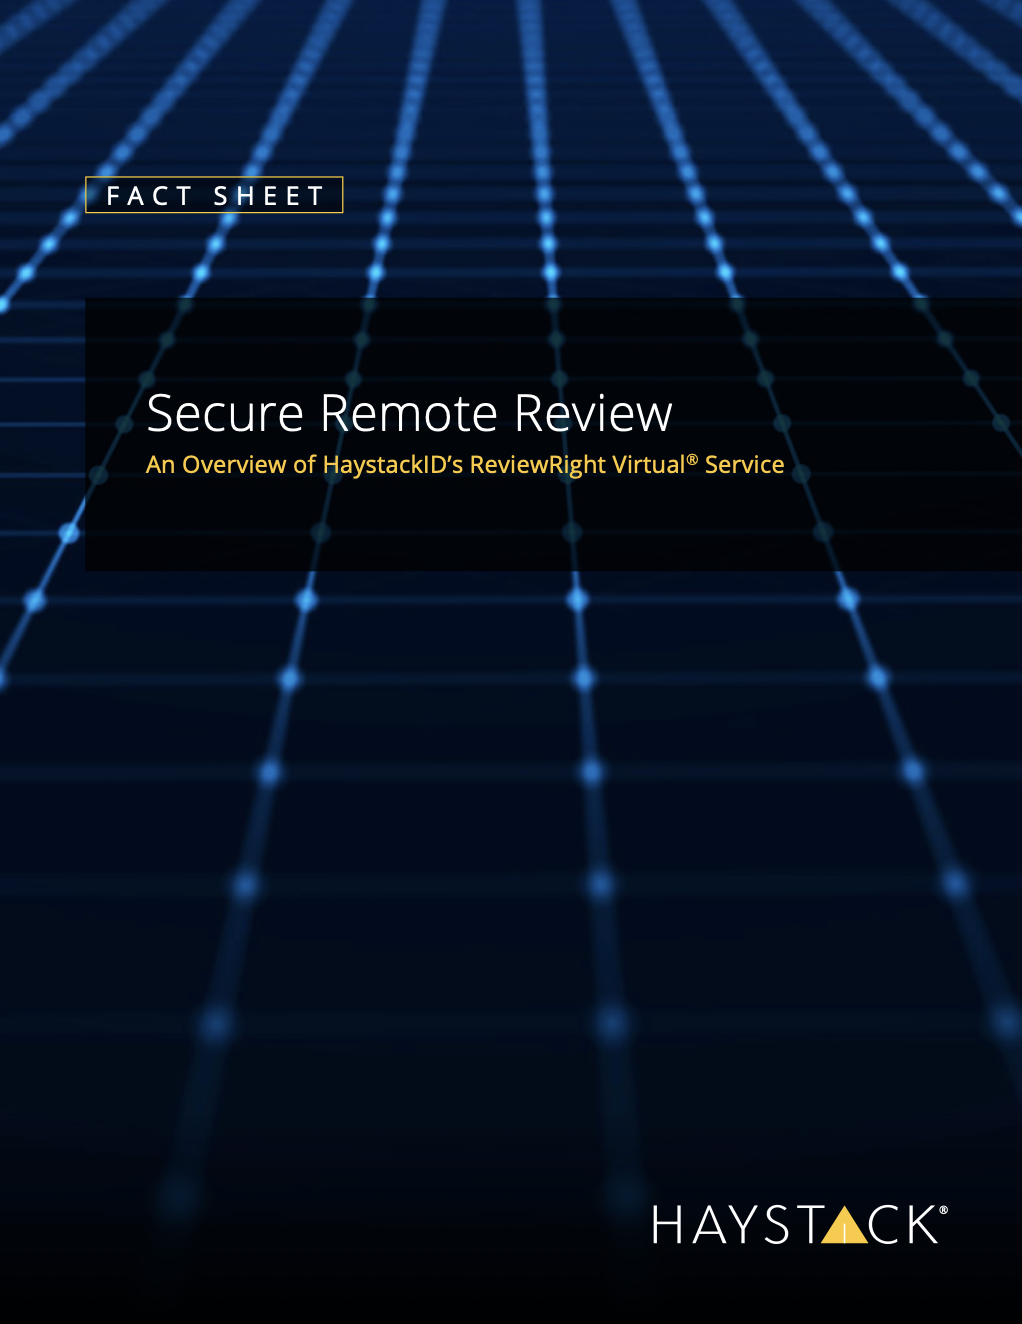 ReviewRight Virtual Fact Sheet Cover